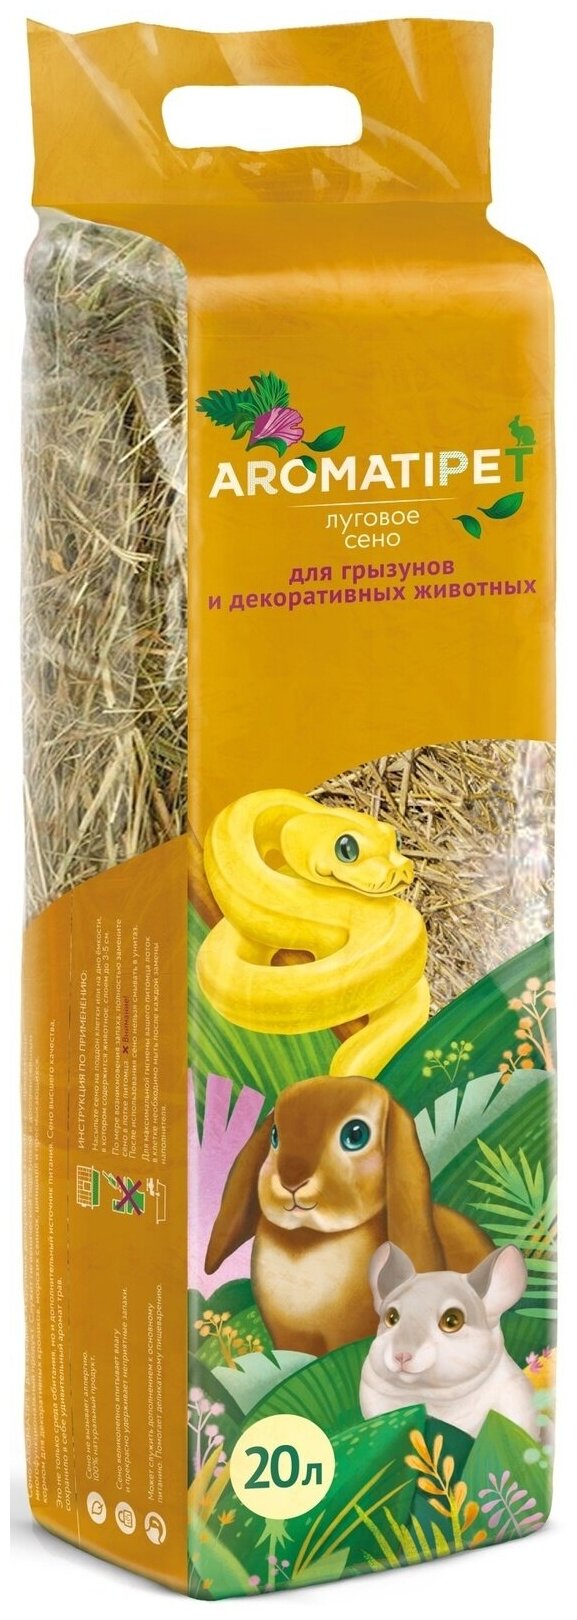 AromatiPet Сено луговое для грызунов и декоративных животных, 20л , 0,6 кг